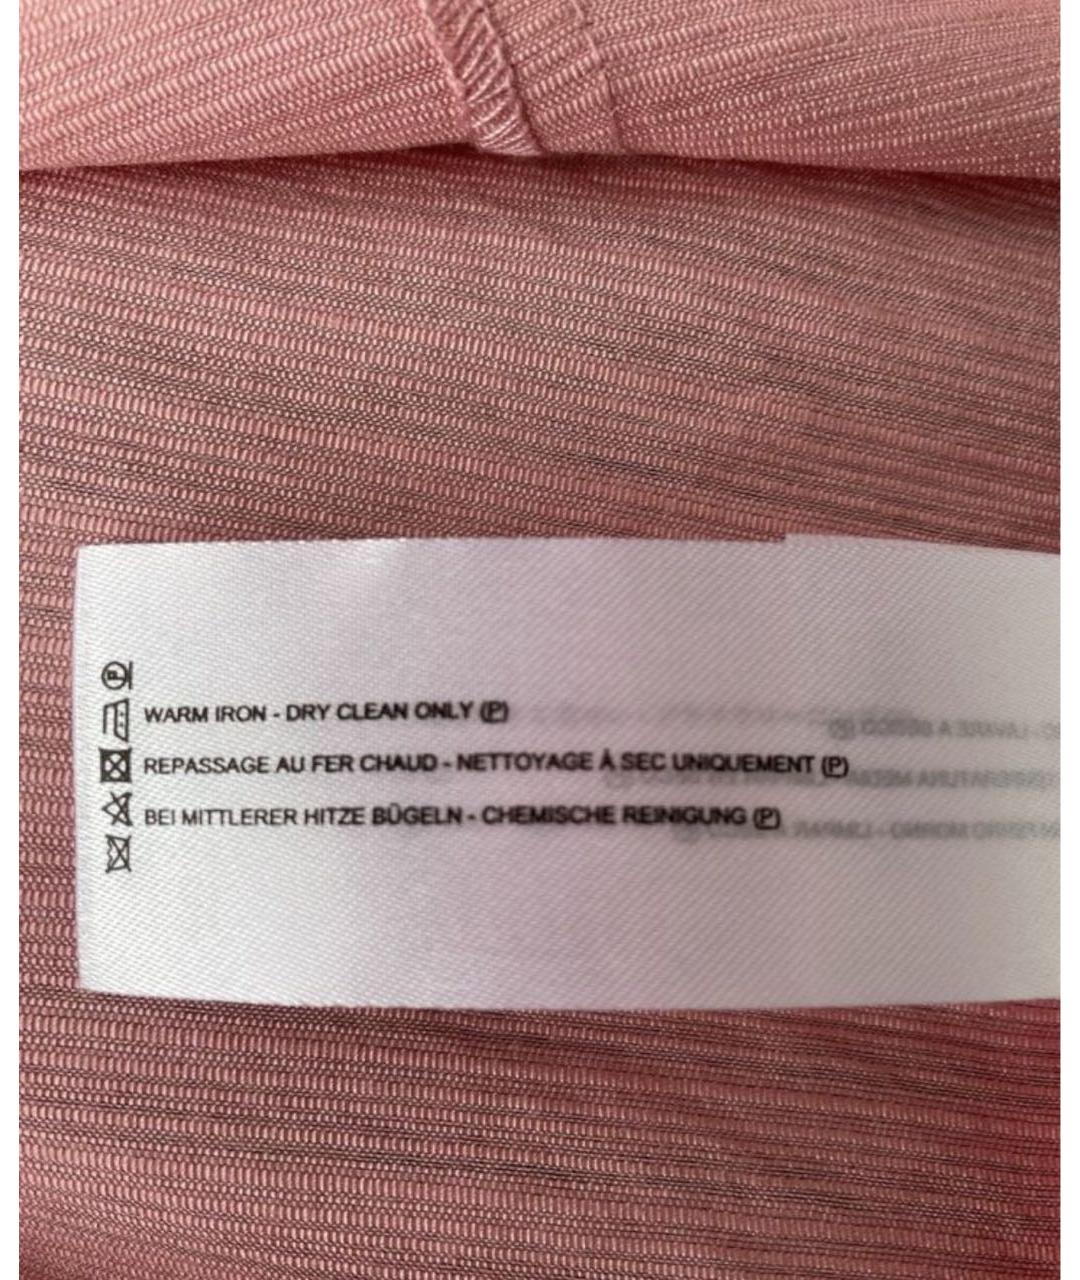 C/MEO COLLECTIVE Розовое синтетическое повседневное платье, фото 4